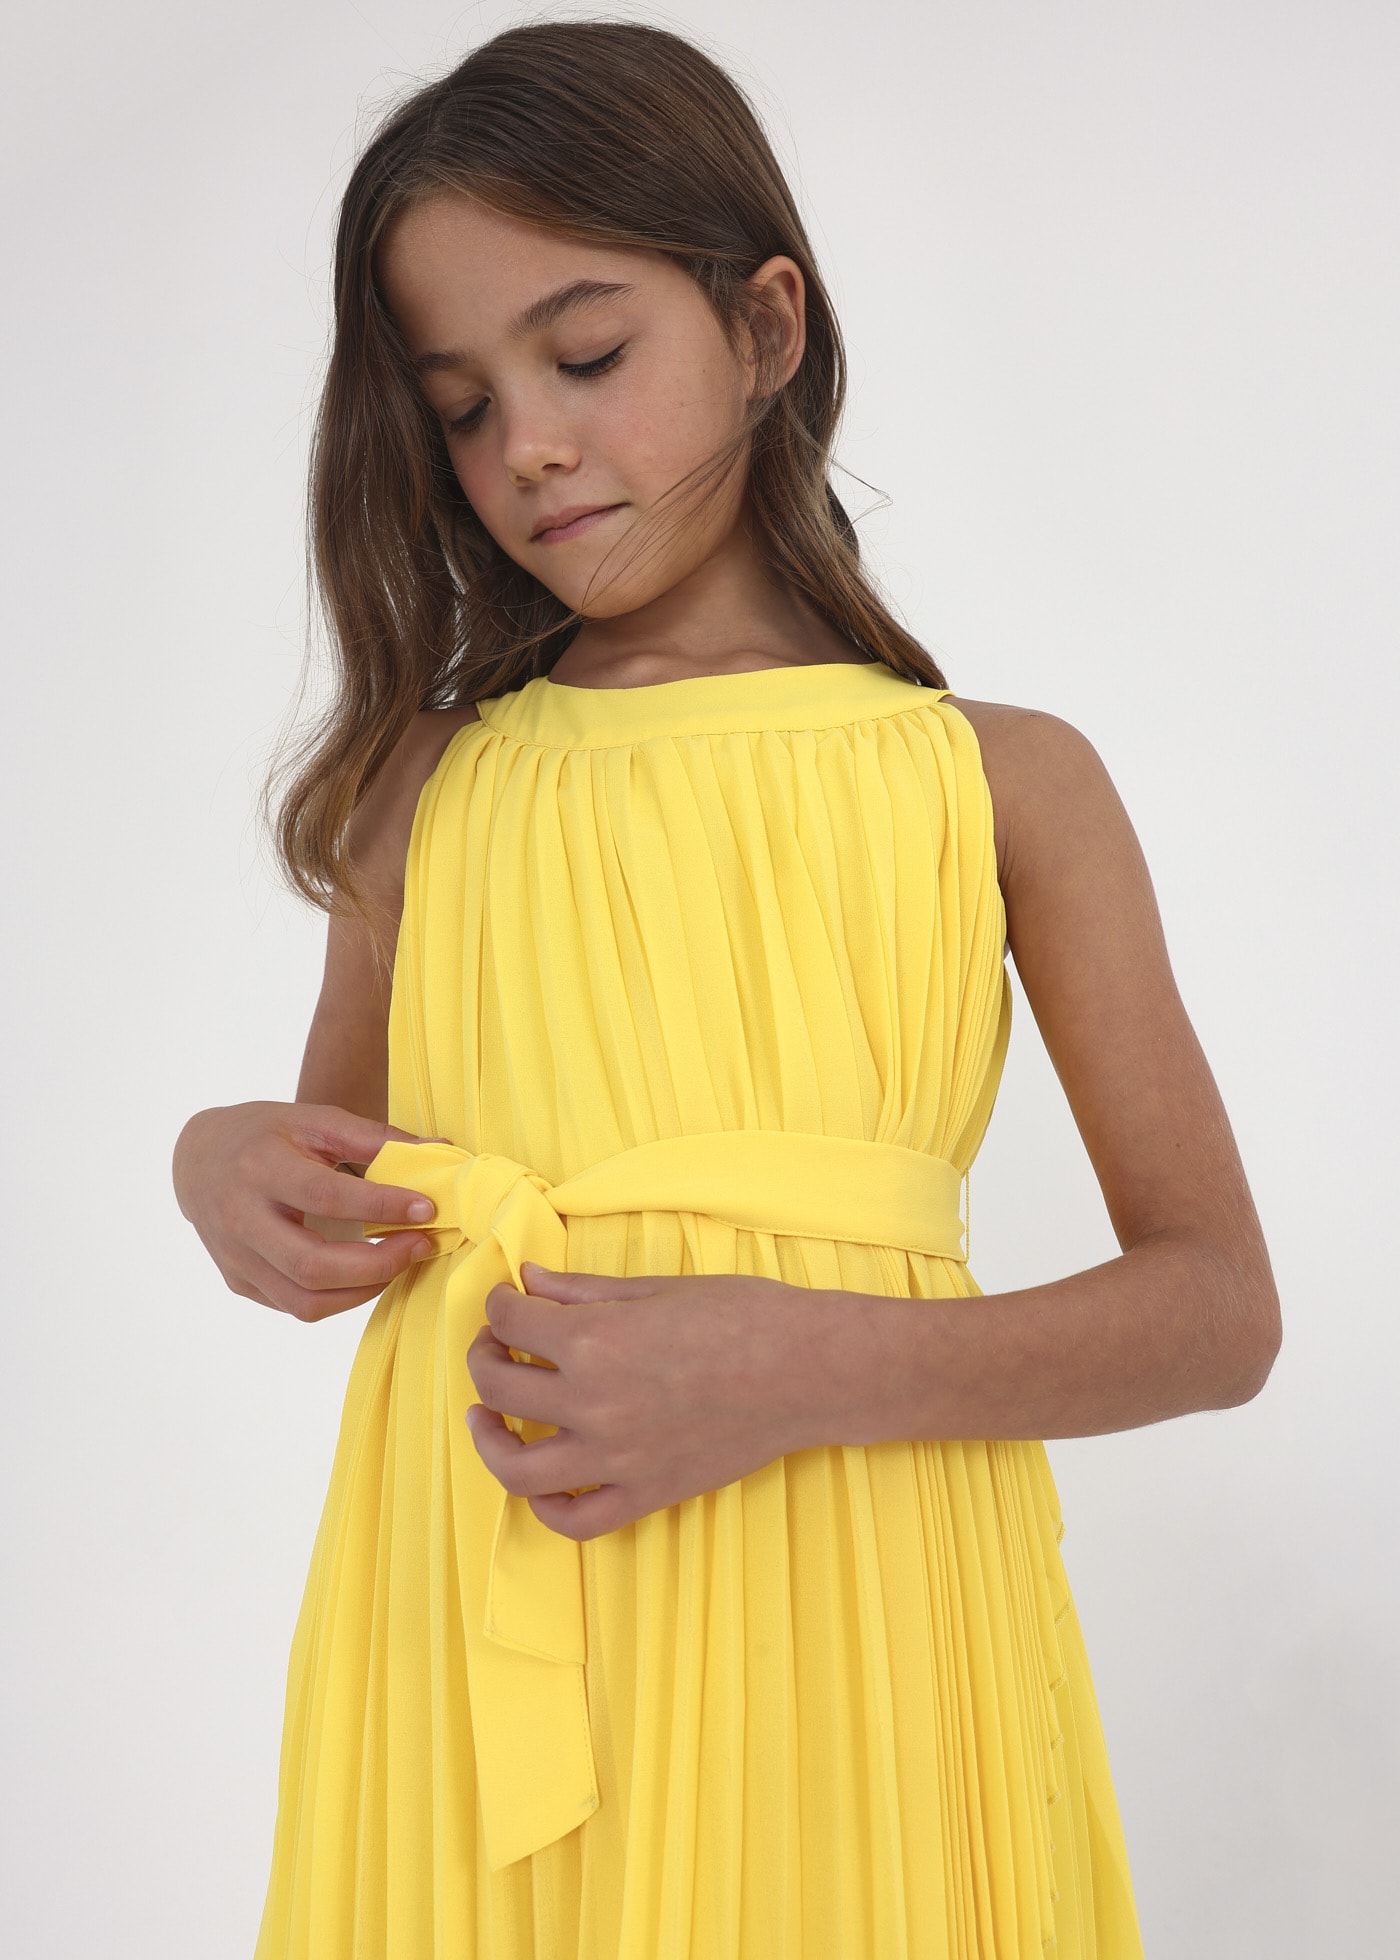 Sukienka plisowana z paskiem w formie kokardy dla dziewczynki Mimosa |  Mayoral ®